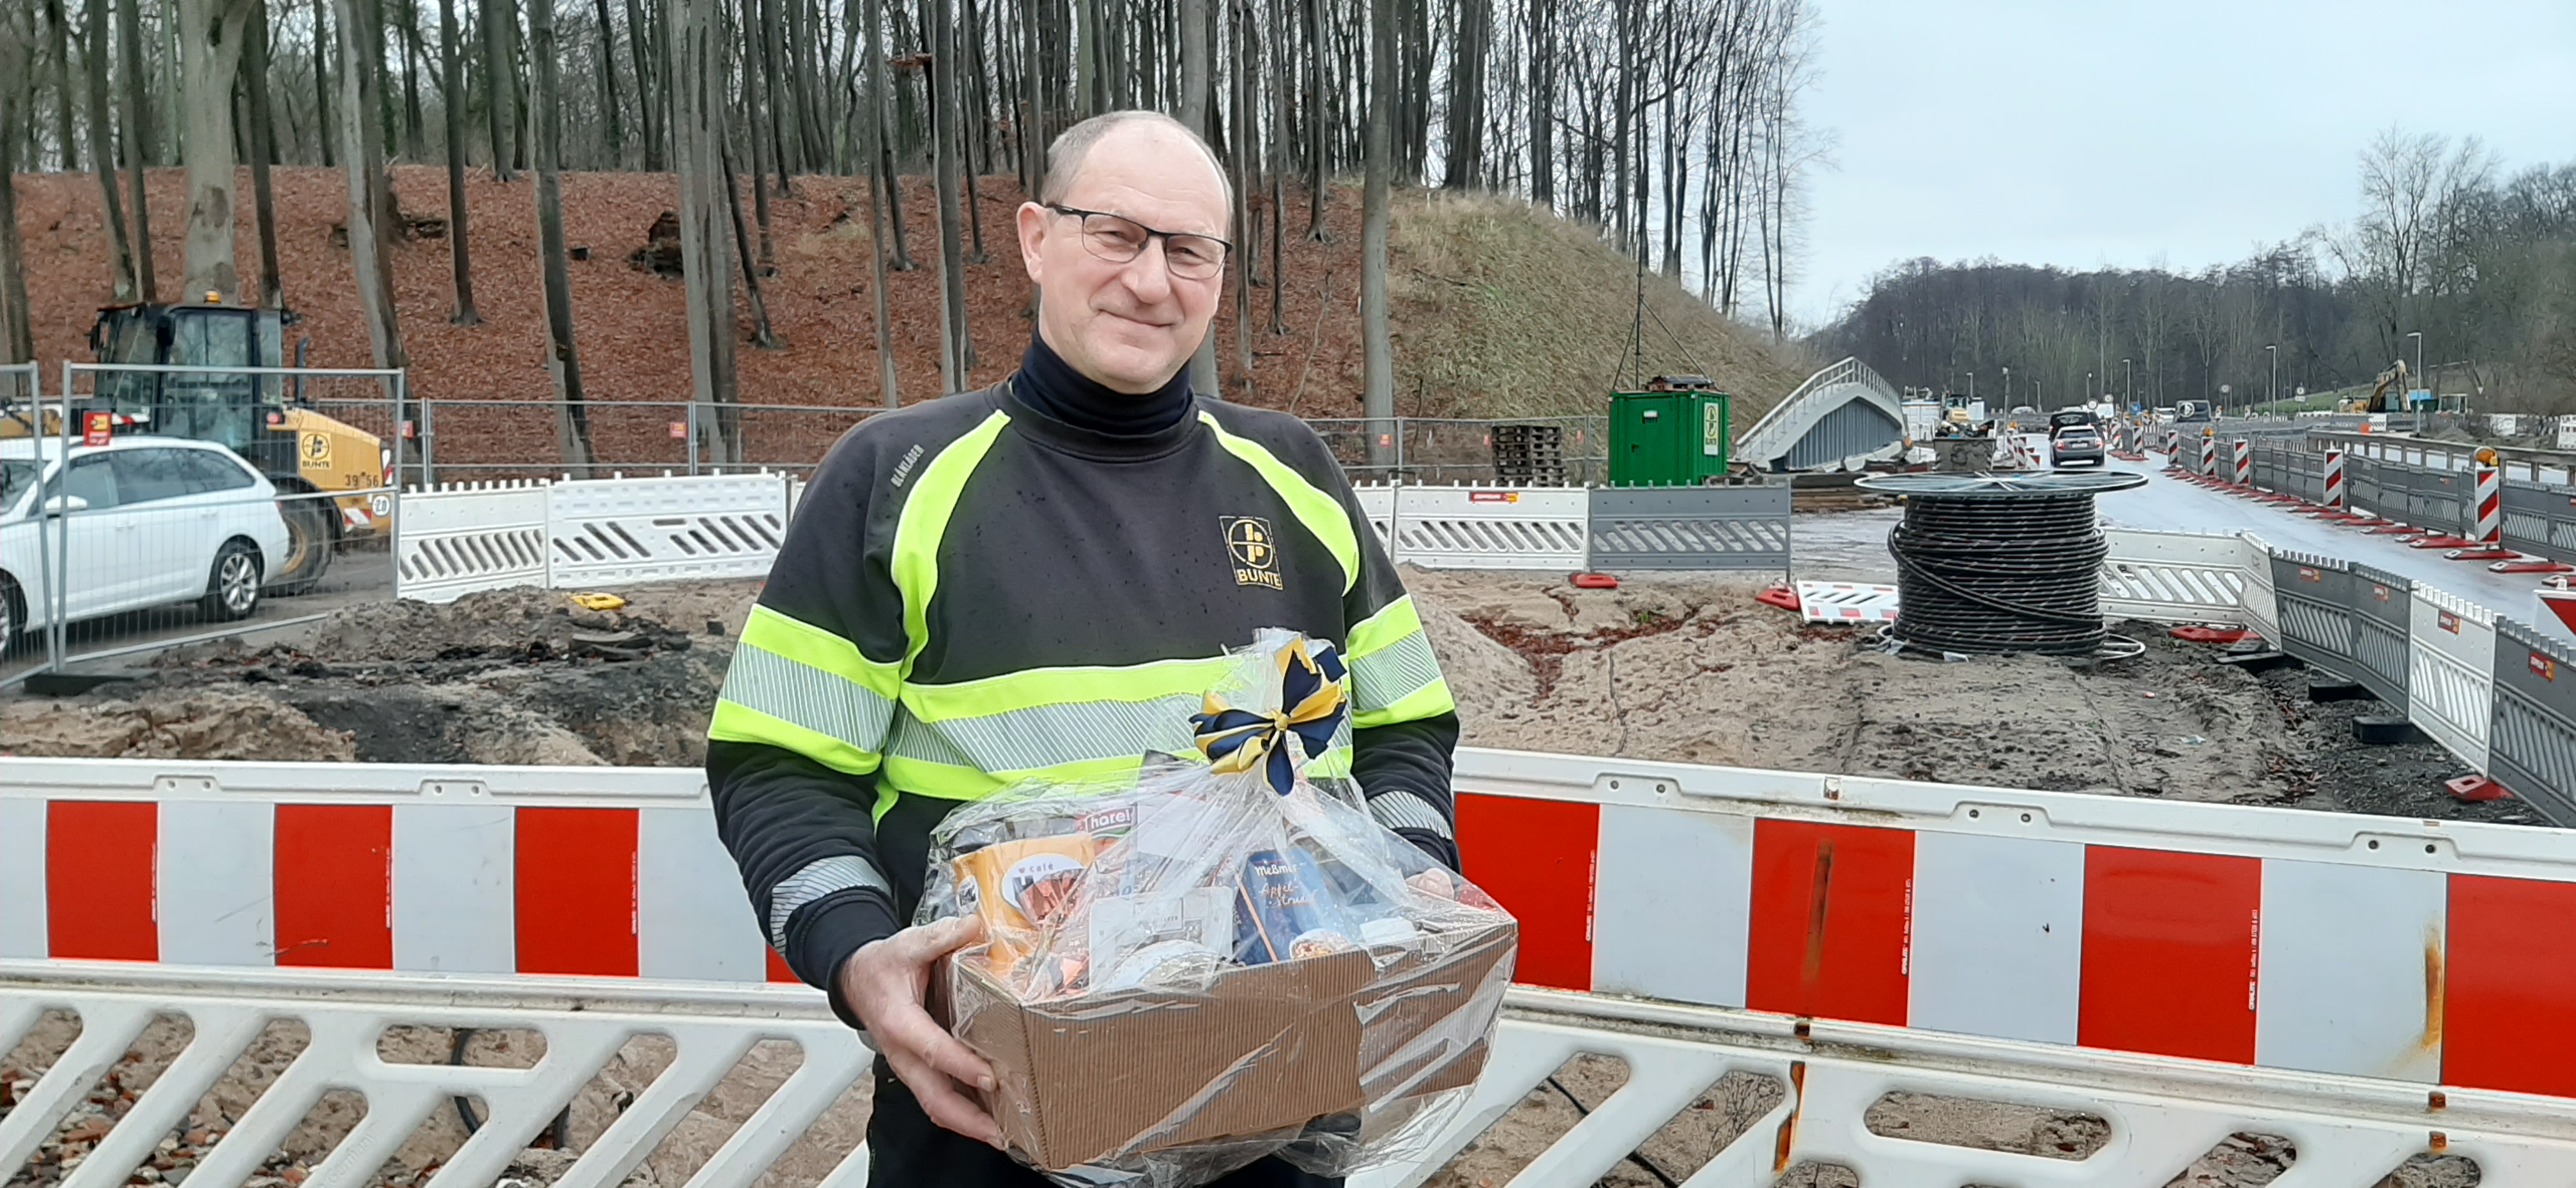 Schwerin: Ehrlicher Finder übergibt Diebesgut